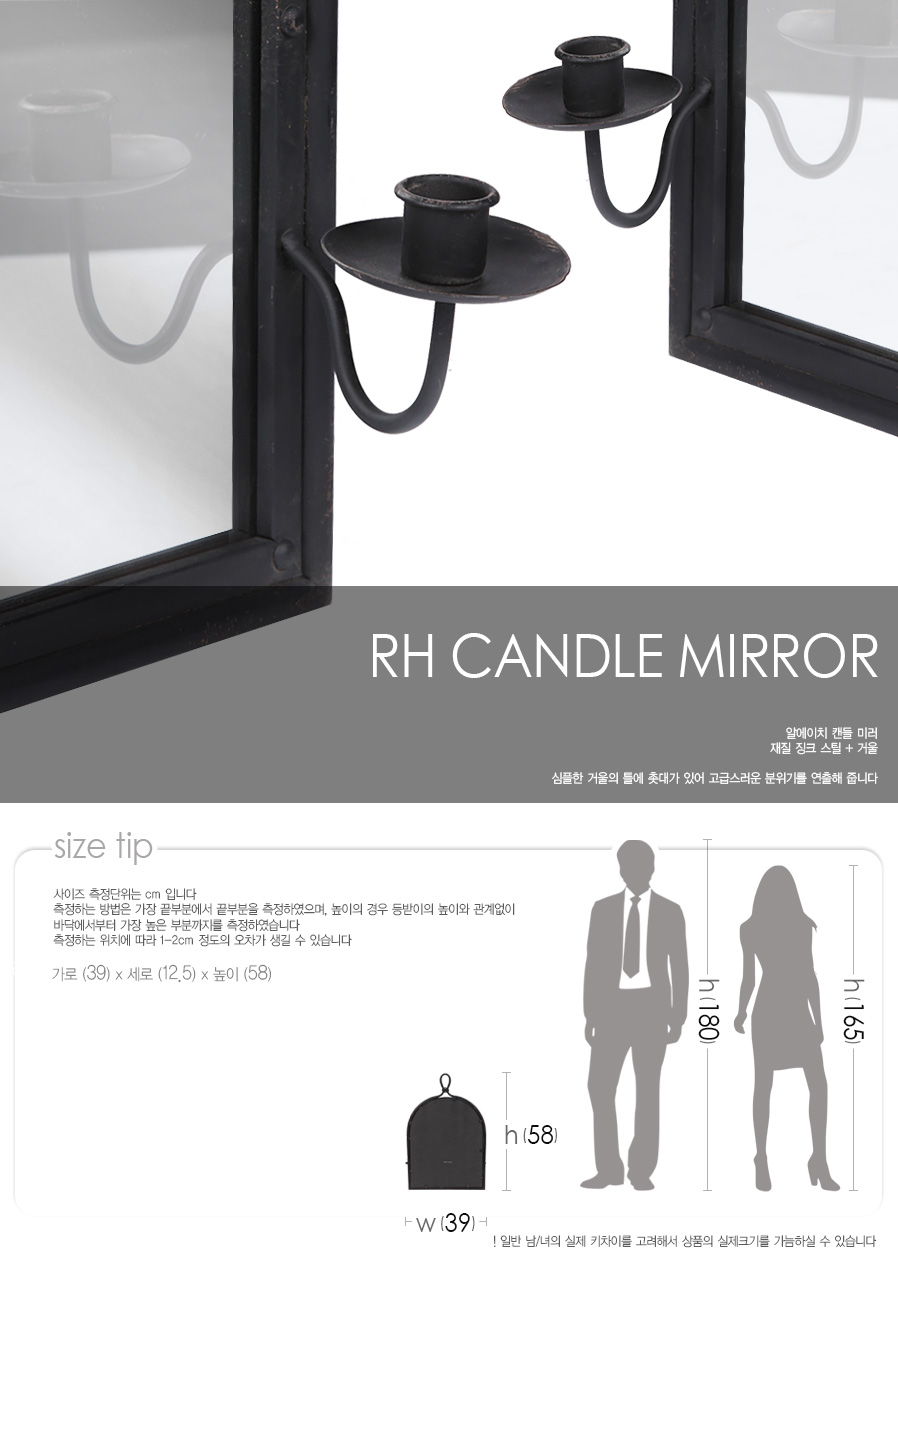 rh-candle-mirror_01.jpg